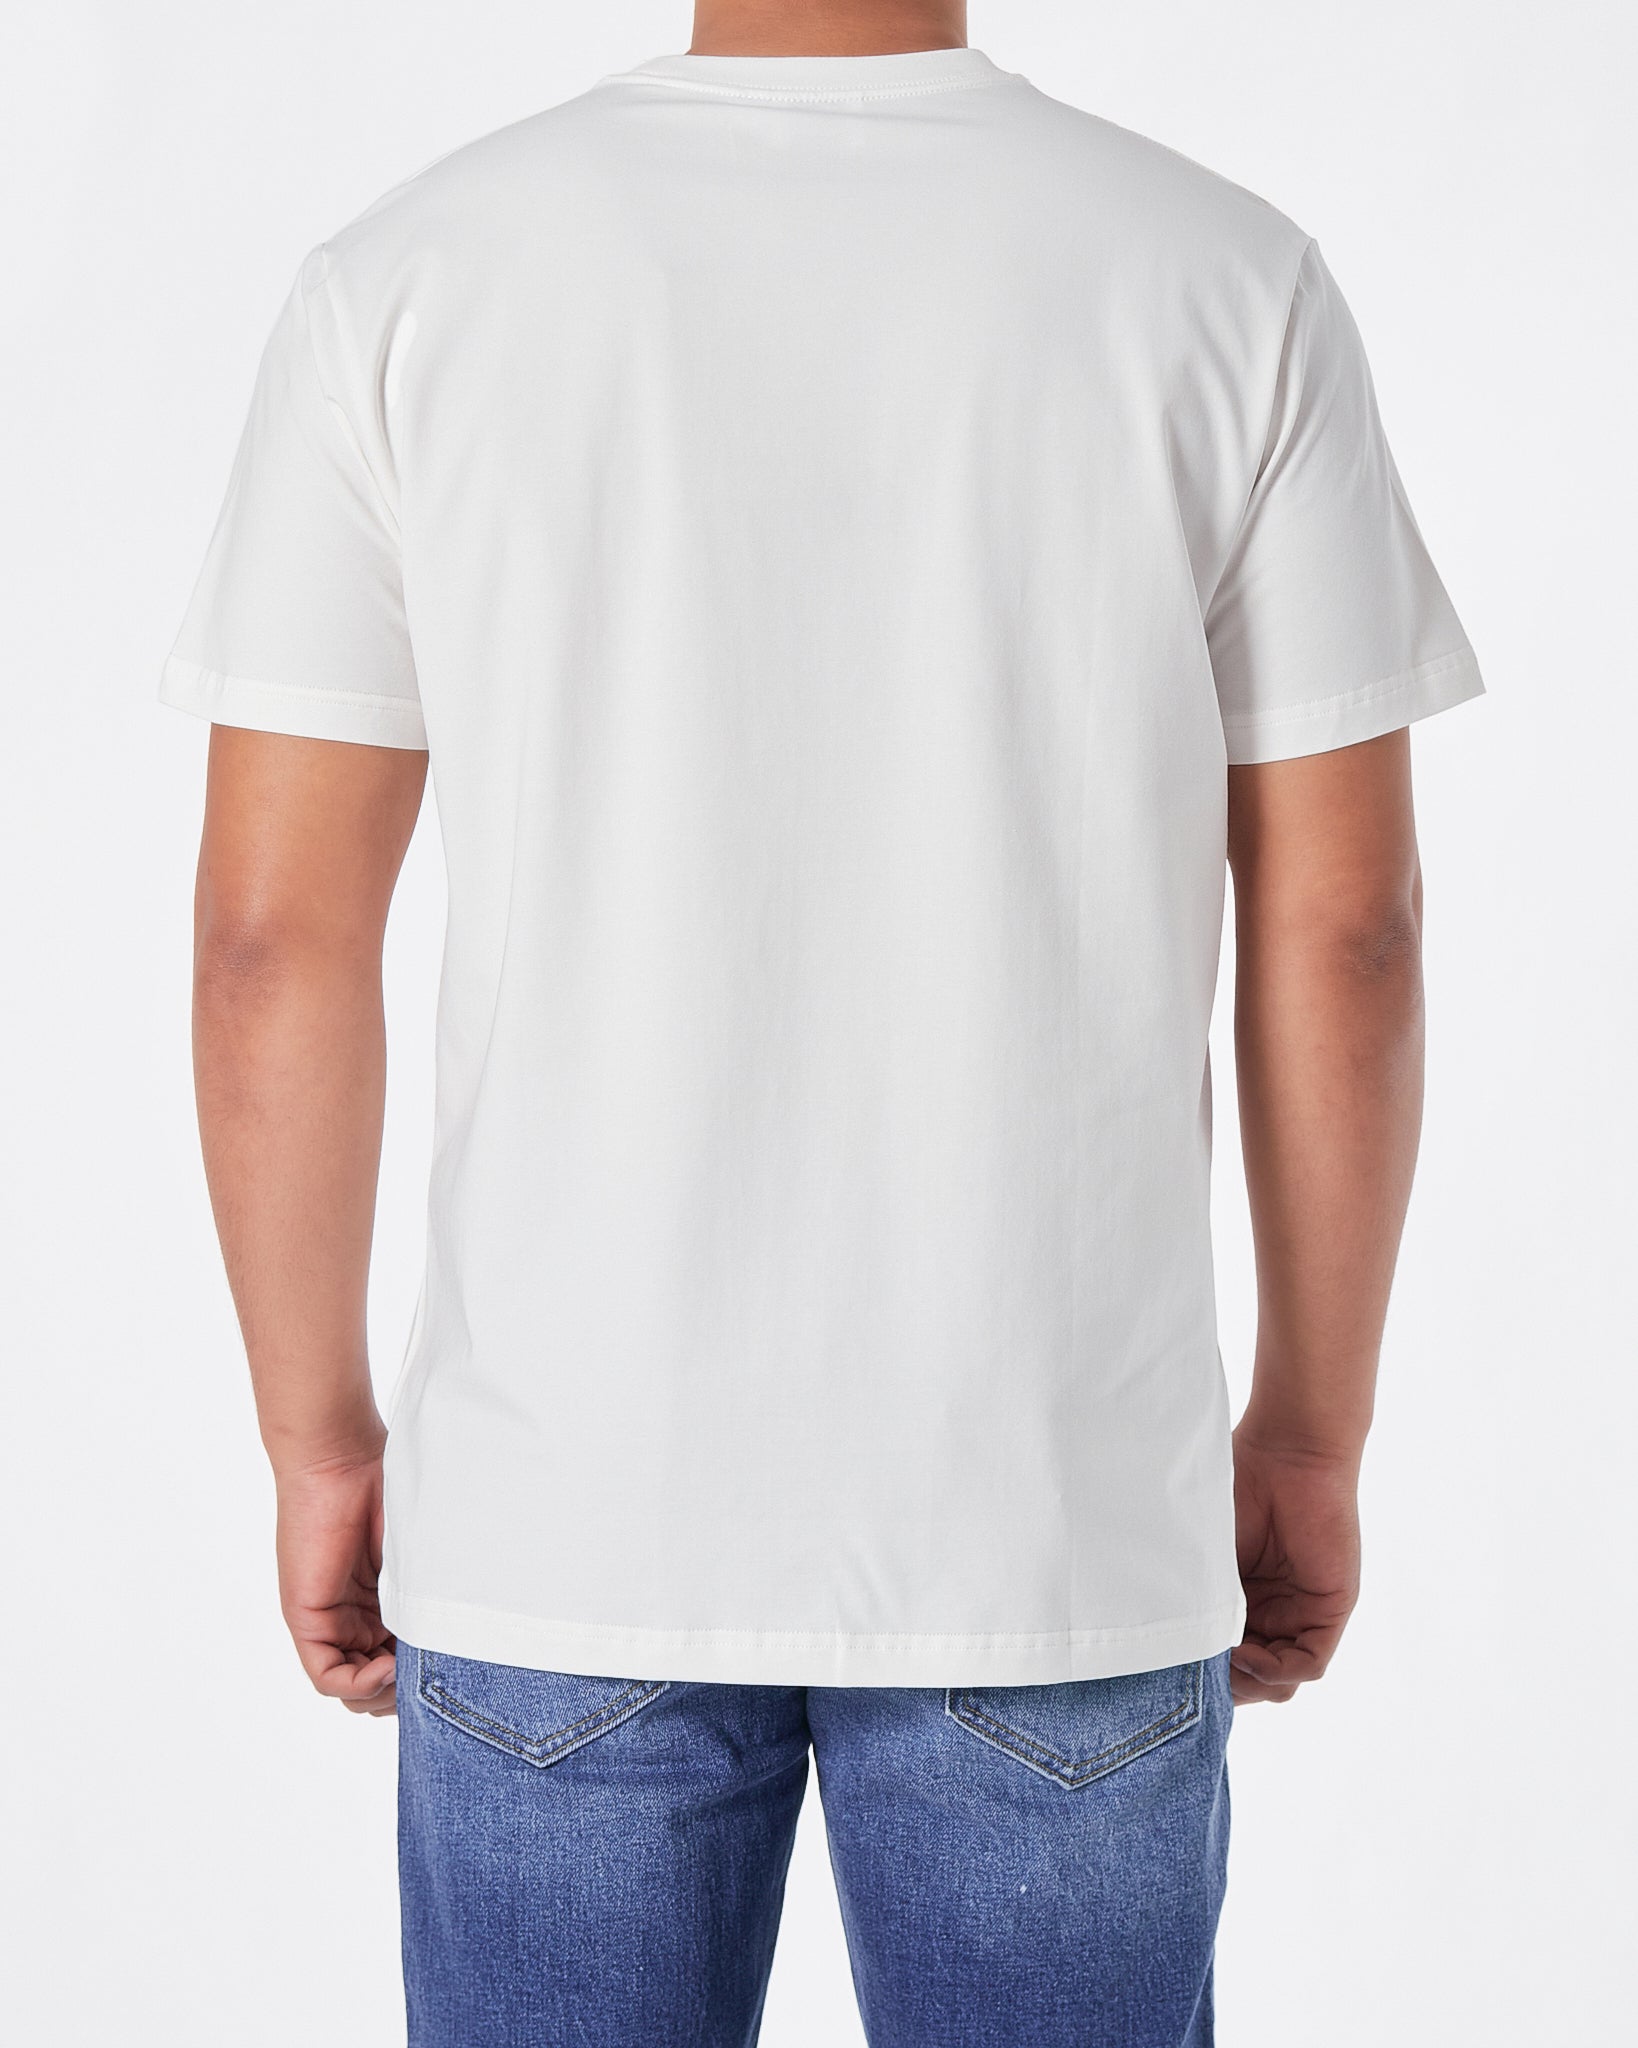 BUR Logo Printed Men White T-Shirt 16.90